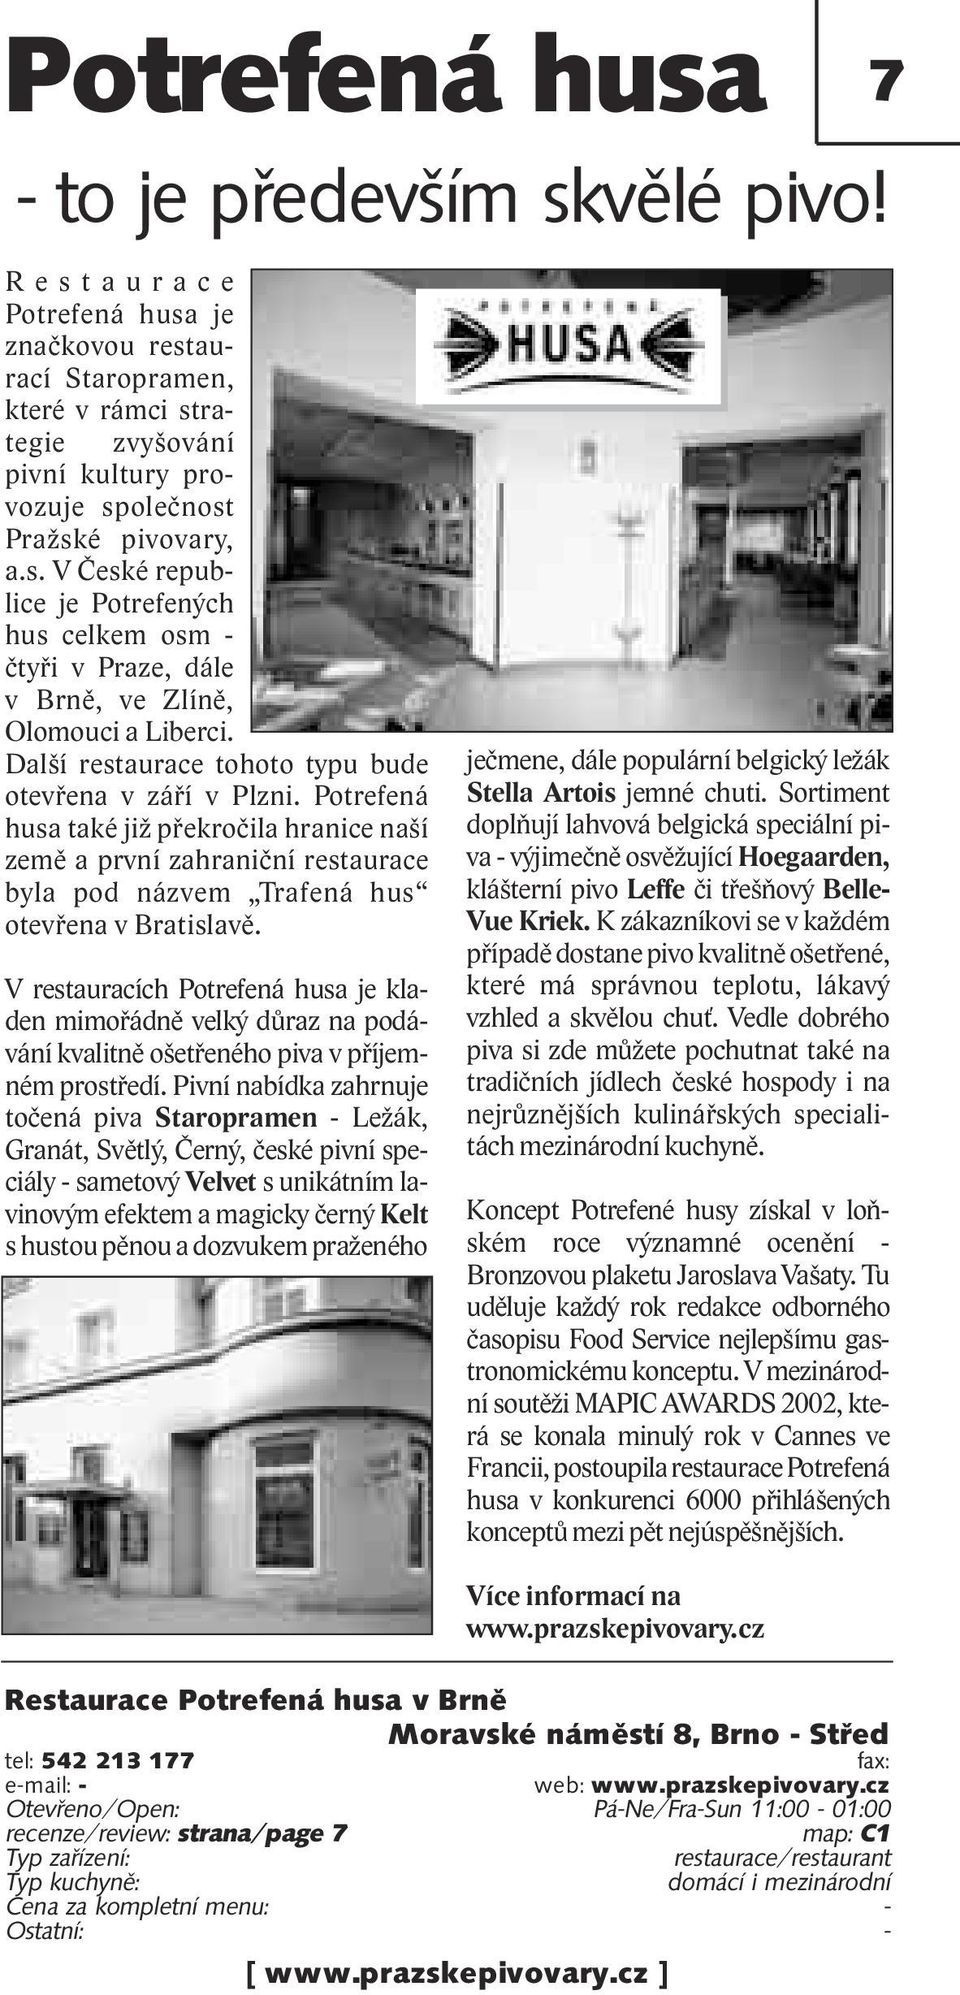 Další restaurace tohoto typu bude otevřena v září v Plzni. Potrefená husa také již překročila hranice naší země a první zahraniční restaurace byla pod názvem Trafená hus otevřena v Bratislavě.